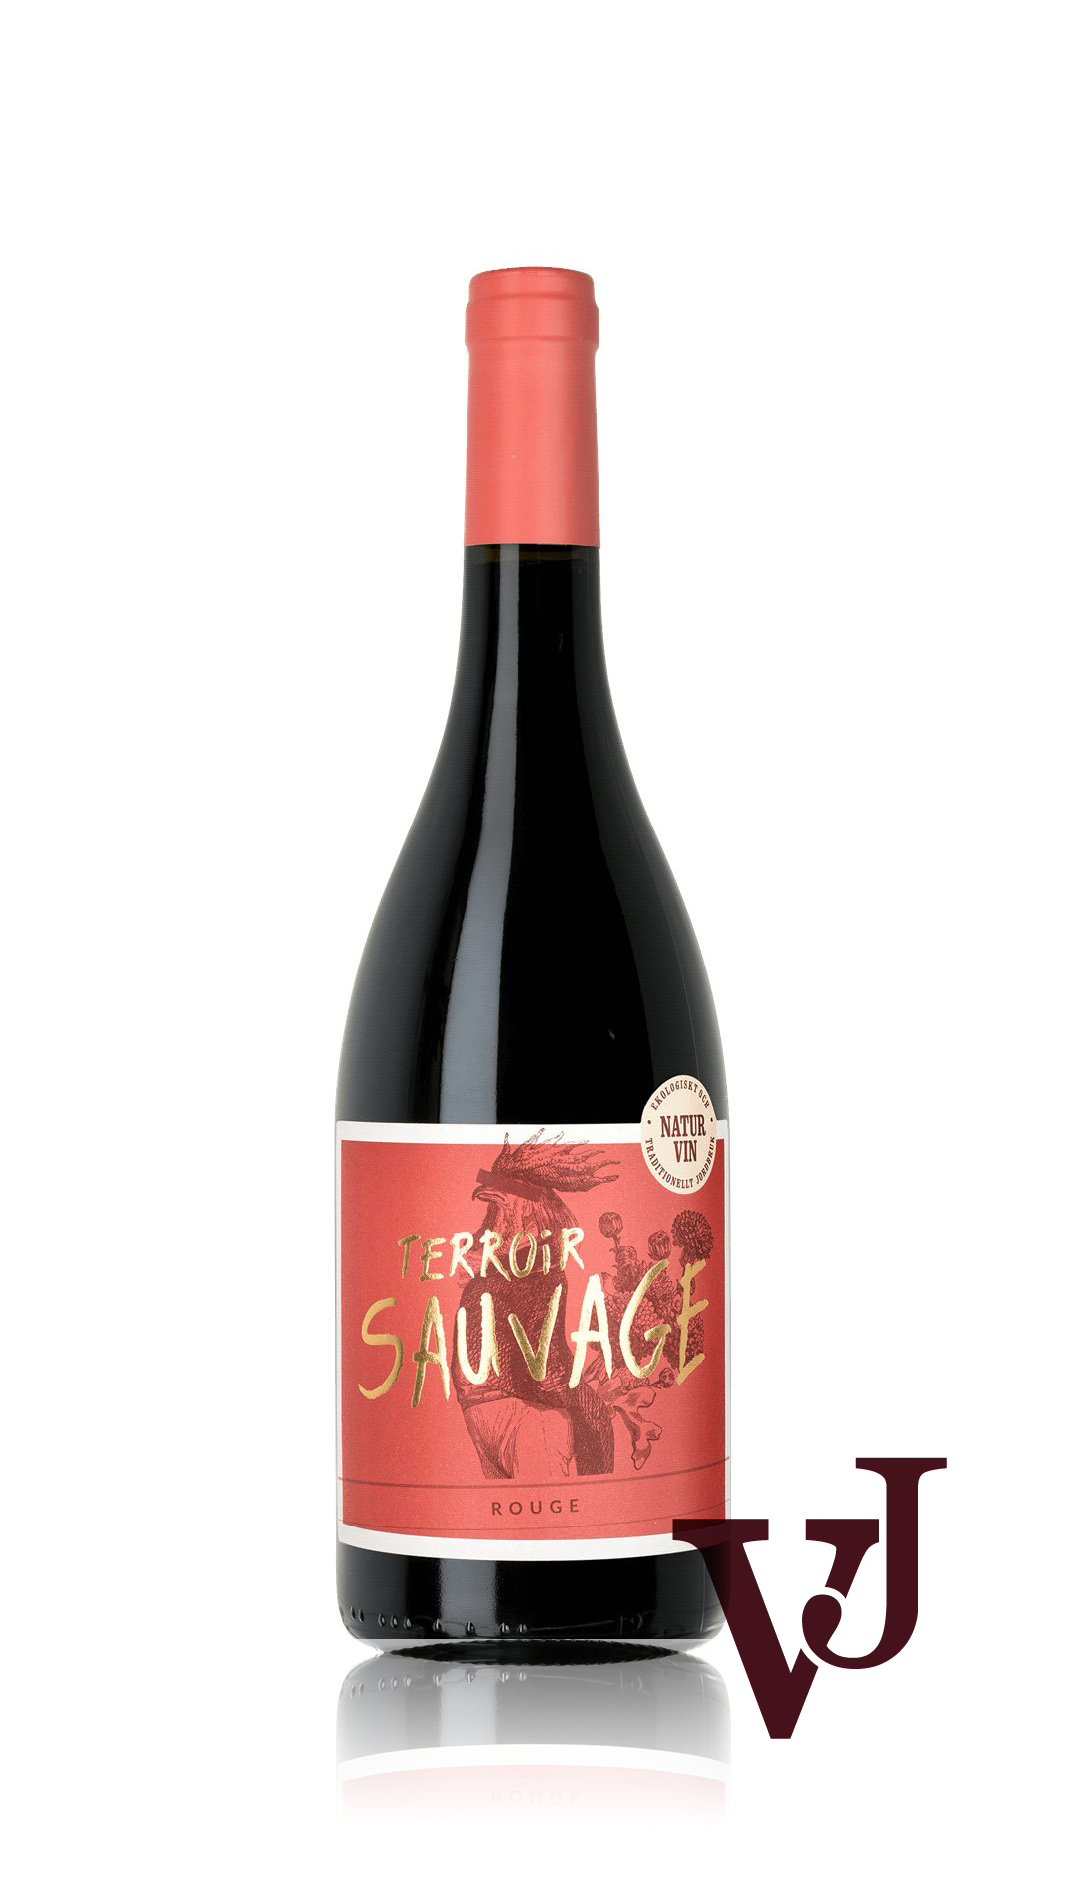 Rött Vin - Terroir Sauvage Rouge artikel nummer 5300701 från producenten The Company of Urban wines And Other Liquids Sweden AB från området Frankrike